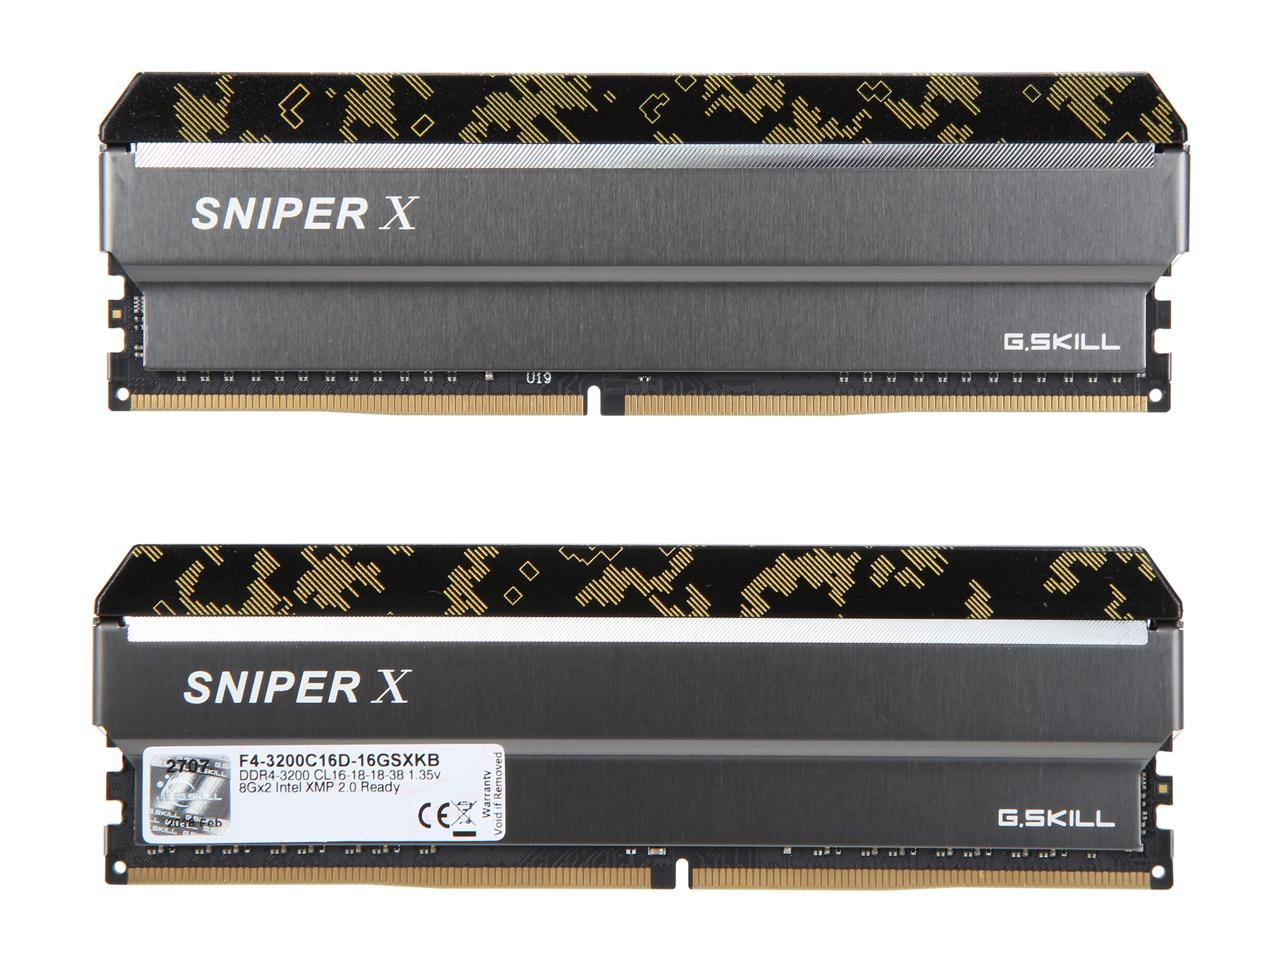 G.SKILL Sniper X Series 16GB (2 x 8GB) DDR4 3200 (PC4 25600) Desktop Memory  Model F4-3200C16D-16GSXKB